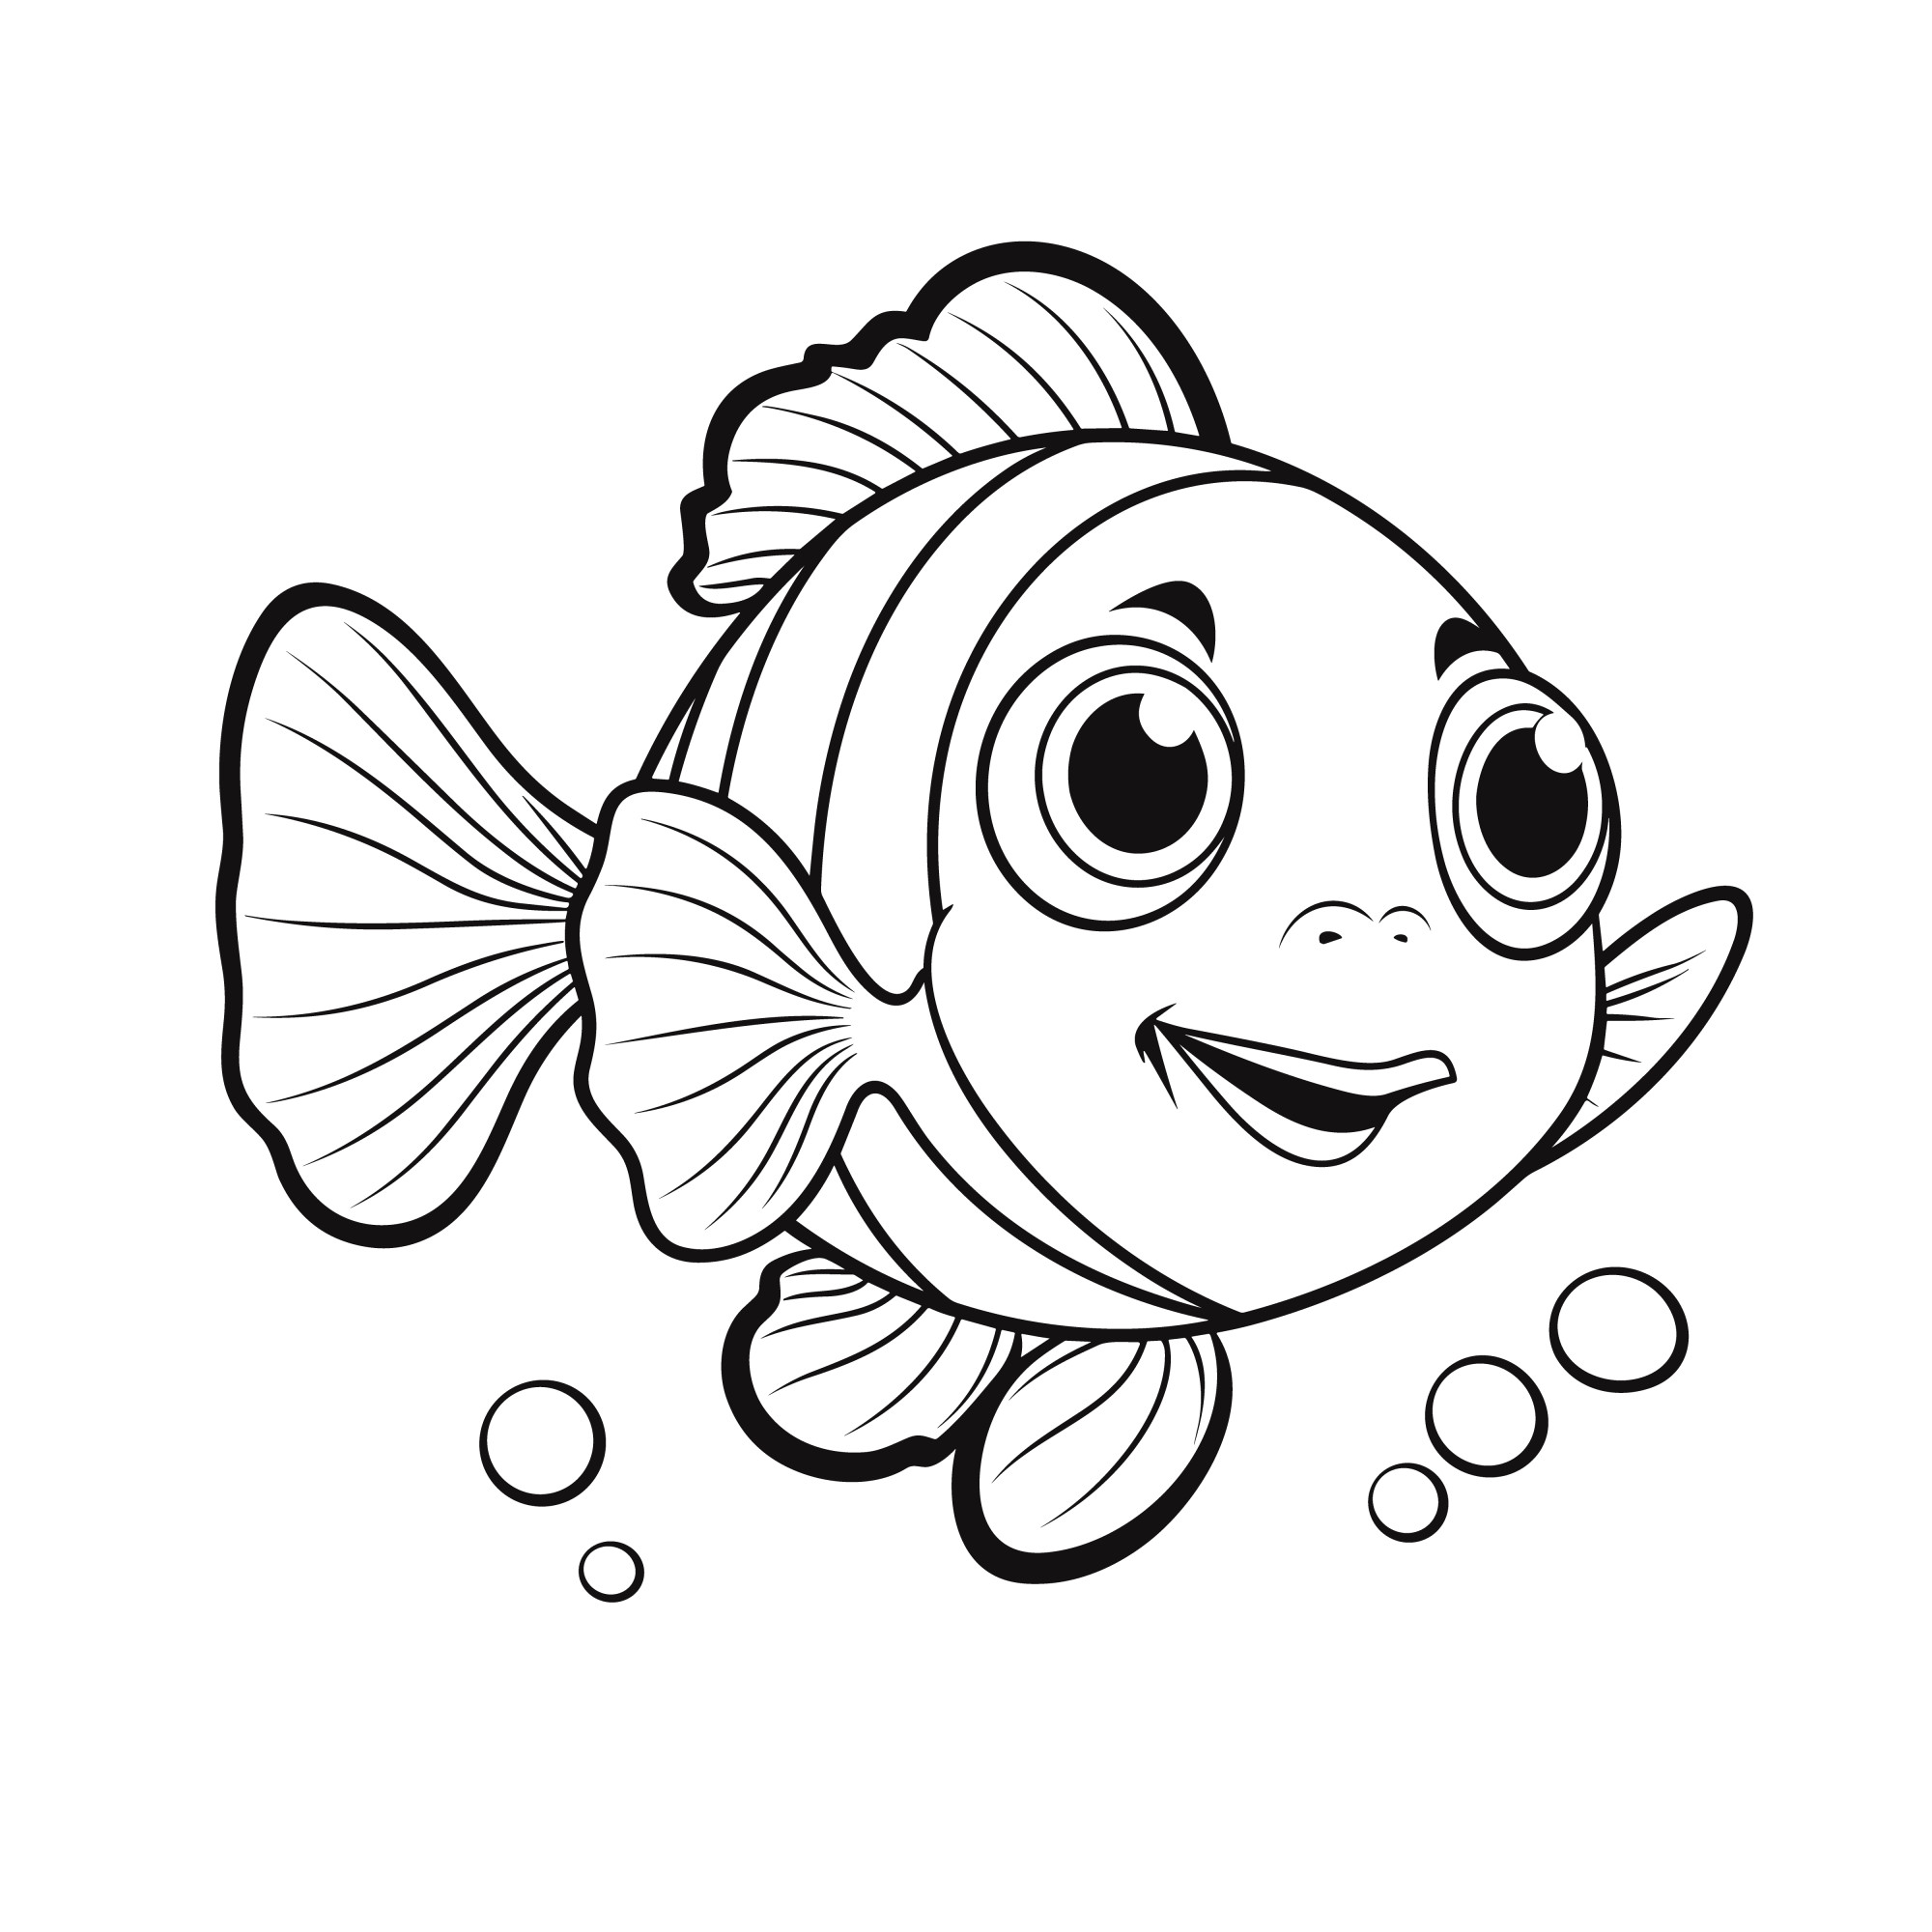 Раскраска для детей: рыбка клоун машет плавником и улыбается